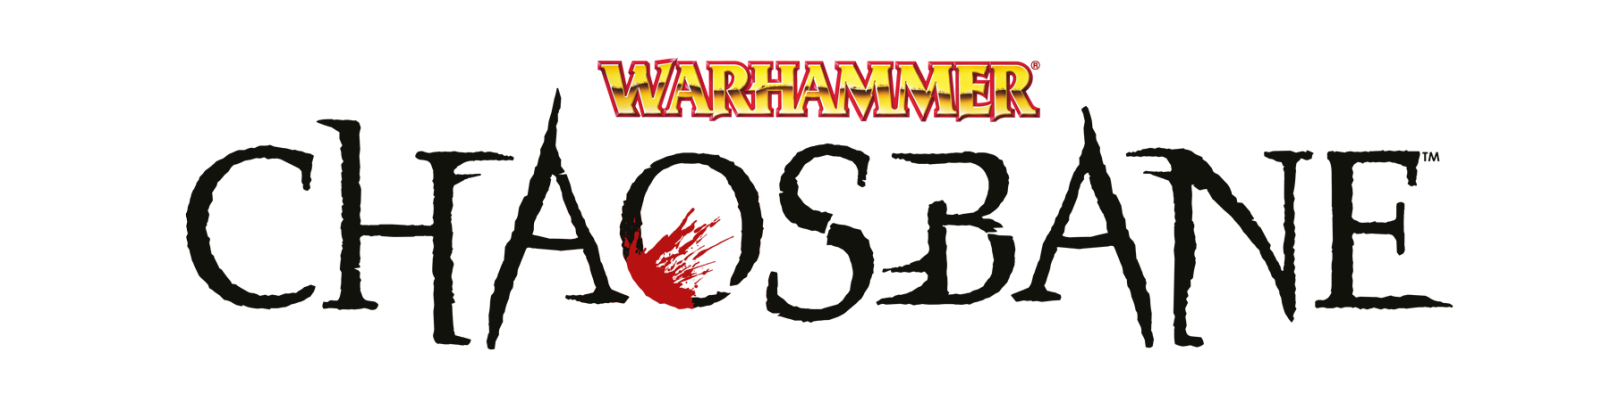 free download warhammer 40k chaosbane